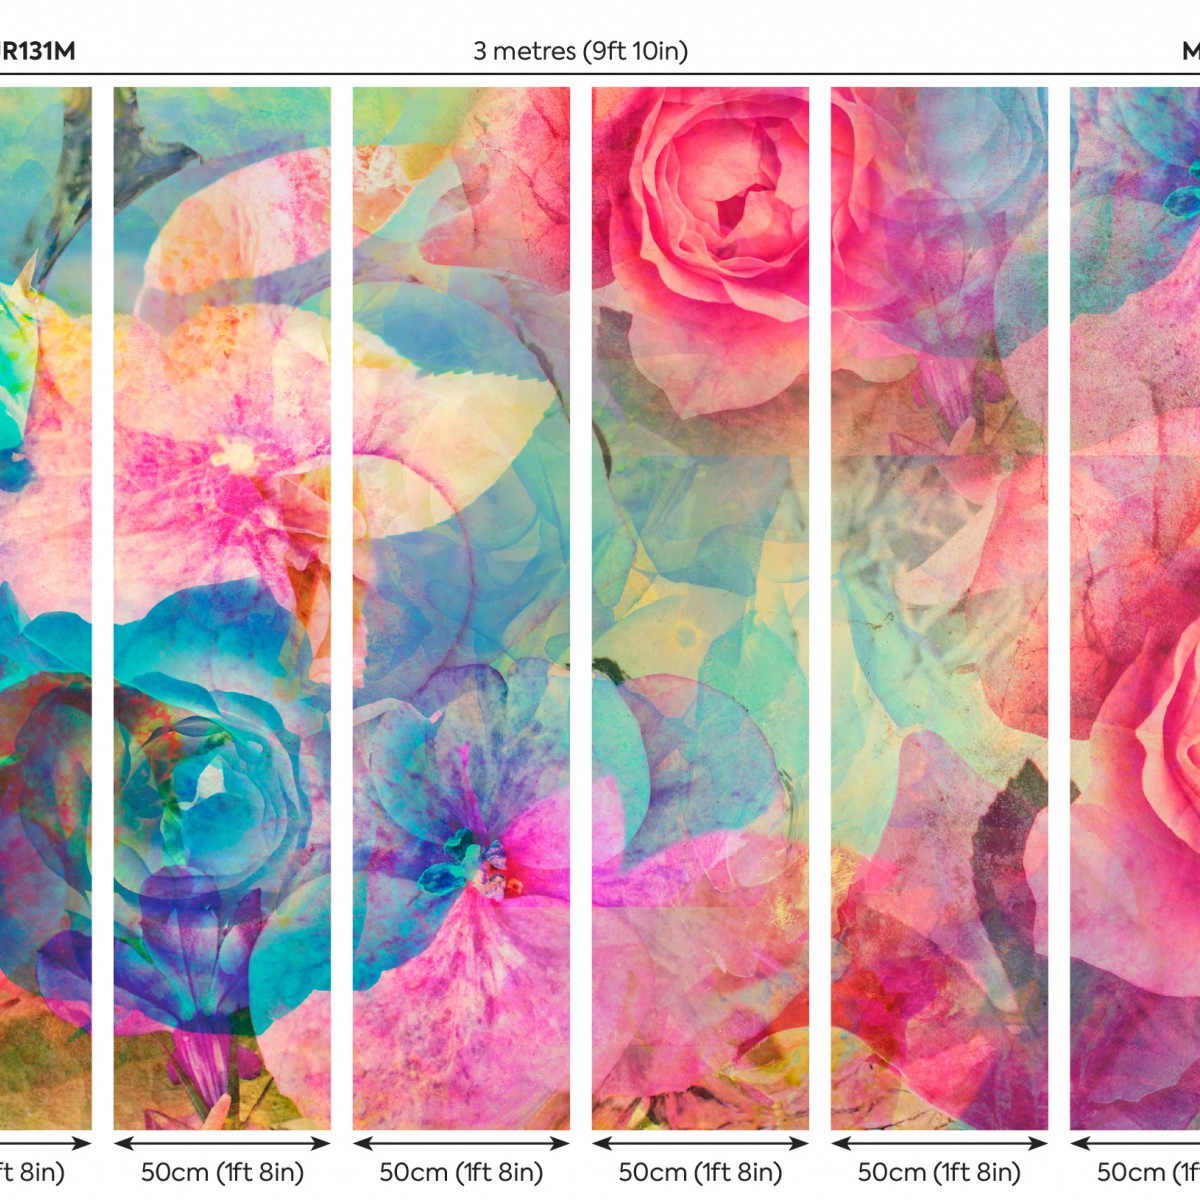 Fototapet Origin Murals ORM-MUR131M. Conține culorile: Roz, Rose, Verde, Verde Deschis, Albastru, Albastru Pastel, Roz, Roz Deschis, Albastru, Albastru Văzduh